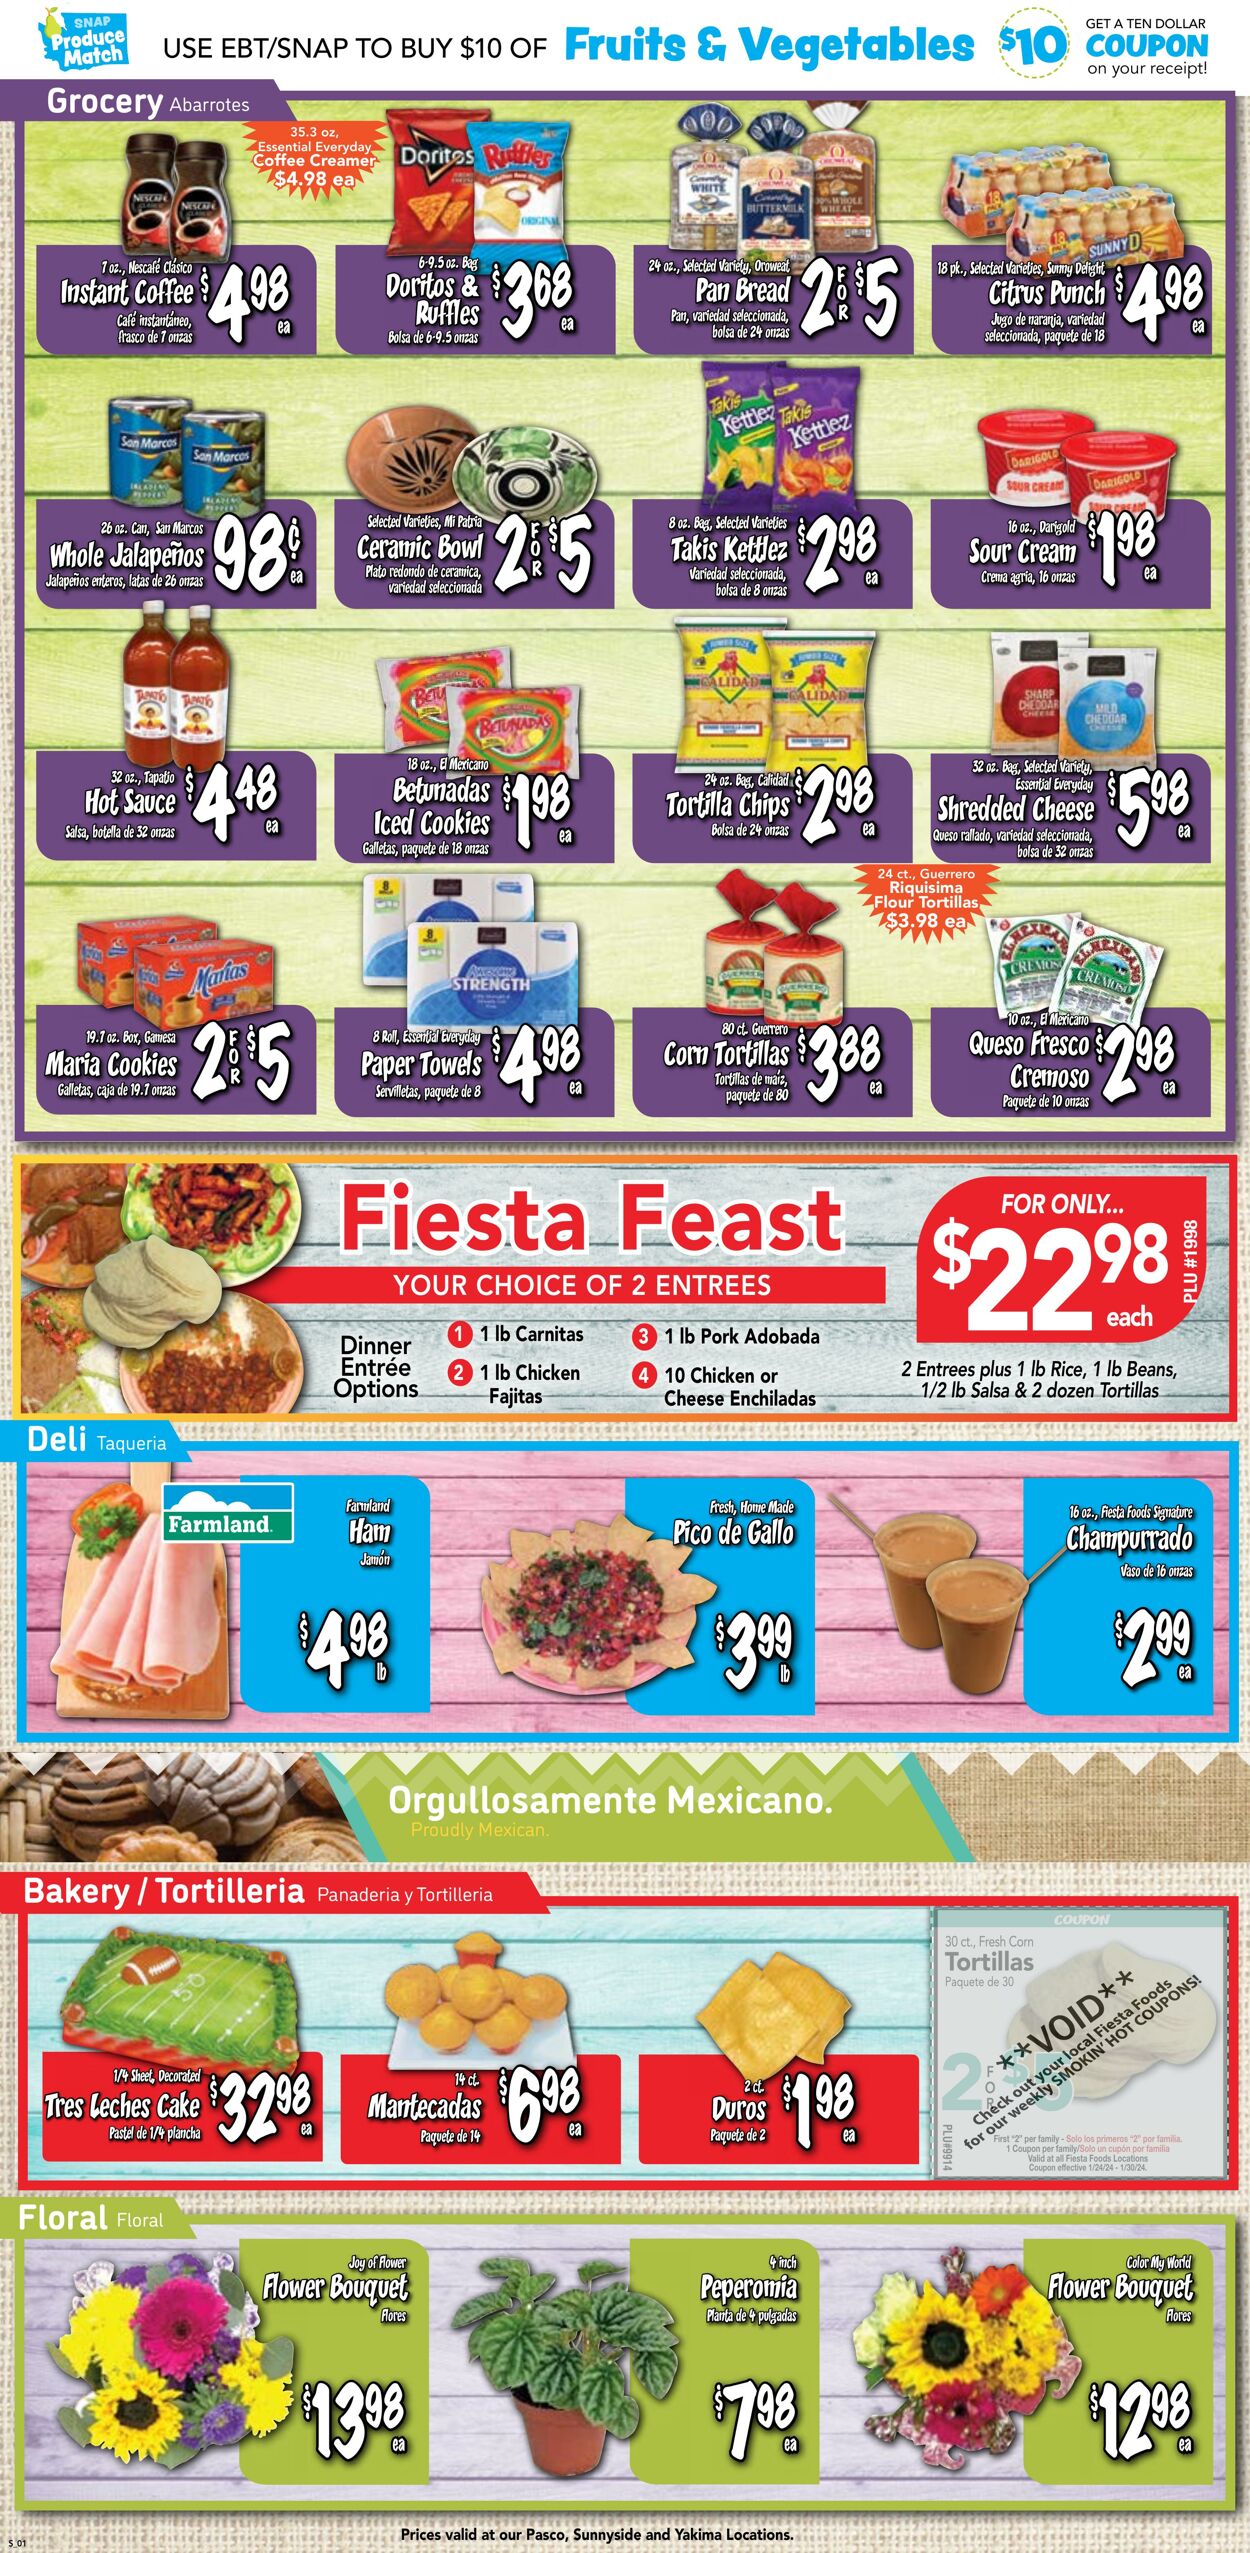 Weekly ad Fiesta Foods 01/24/2024 - 01/30/2024